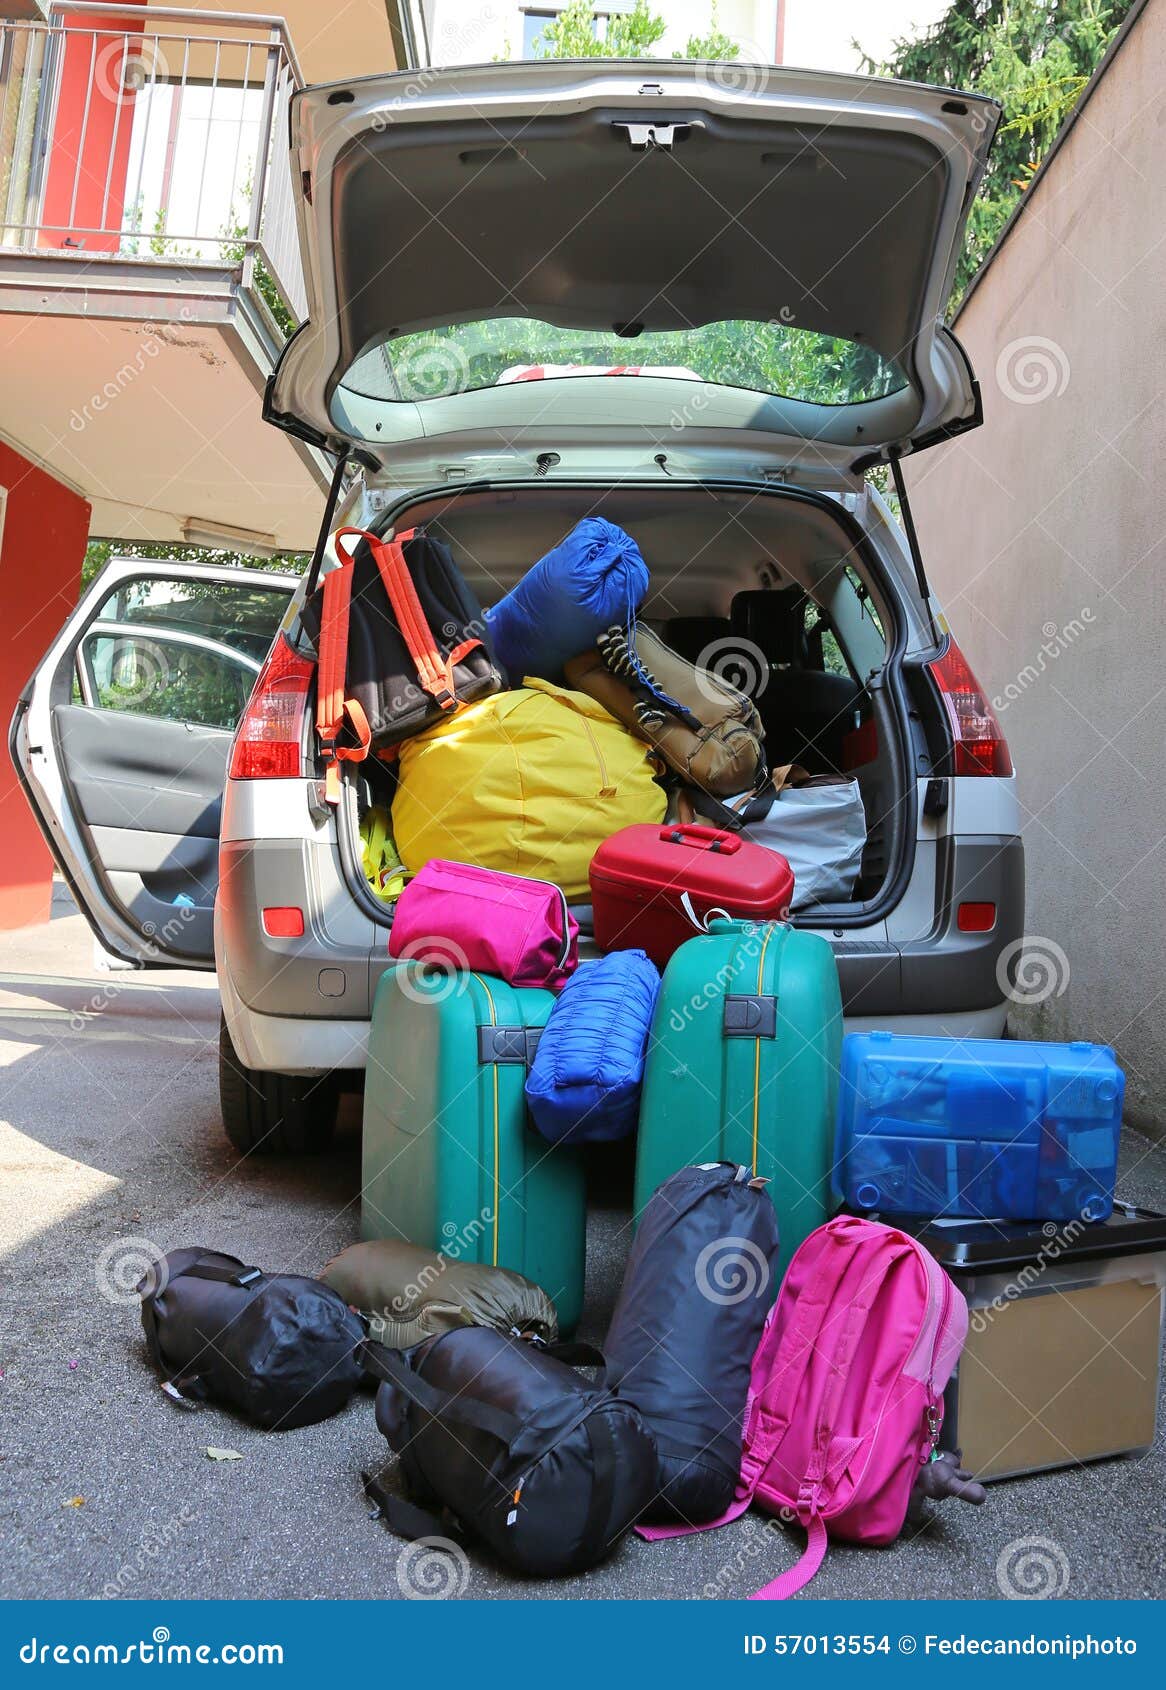 Koffer Und Taschen Im Kofferraum Des Autos Bereit Für Den Urlaub Fahren  Lizenzfreie Fotos, Bilder und Stock Fotografie. Image 38308003.